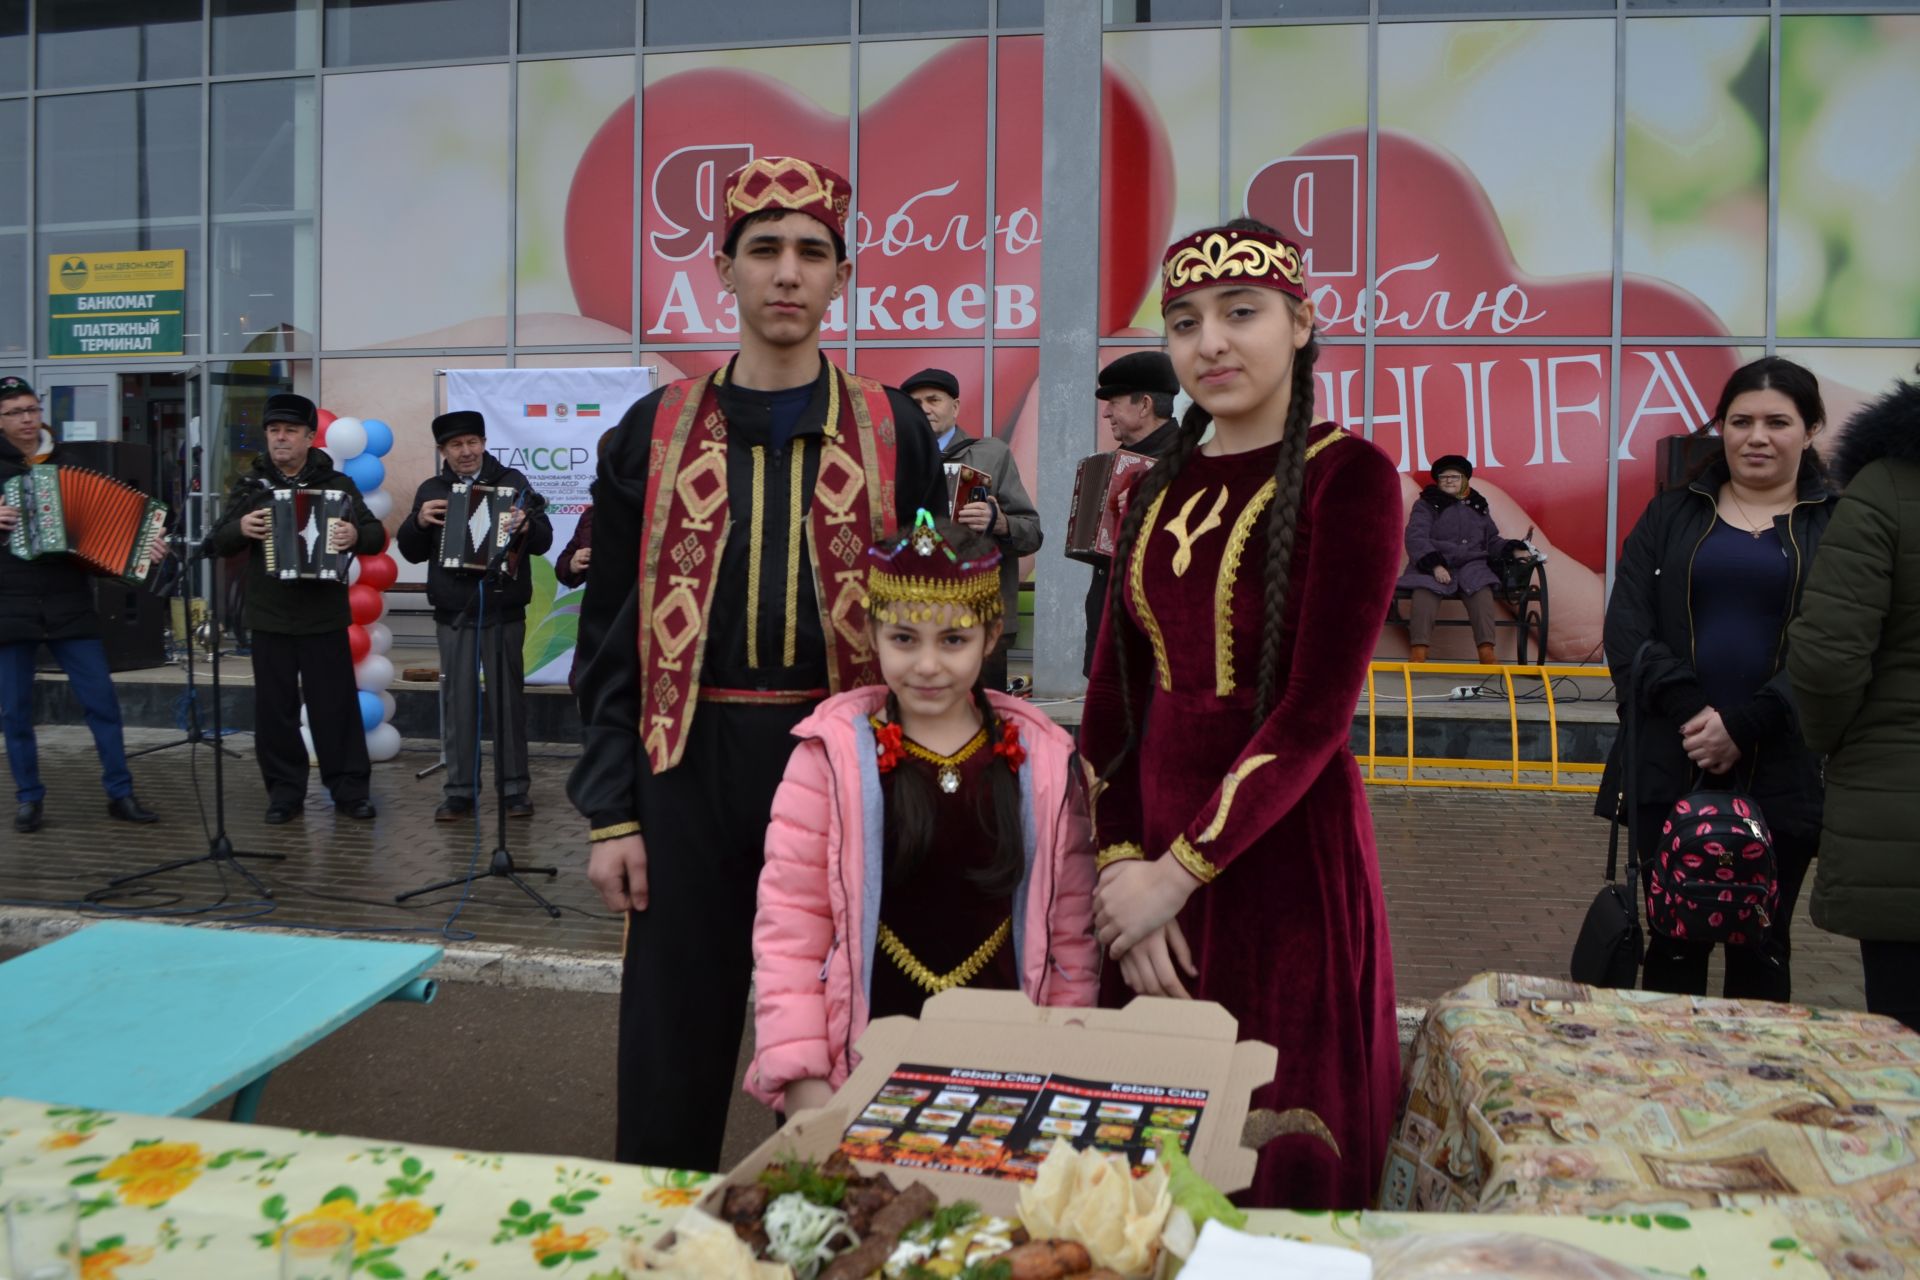 Сегодня в Азнакаево состоялся праздник Науруз